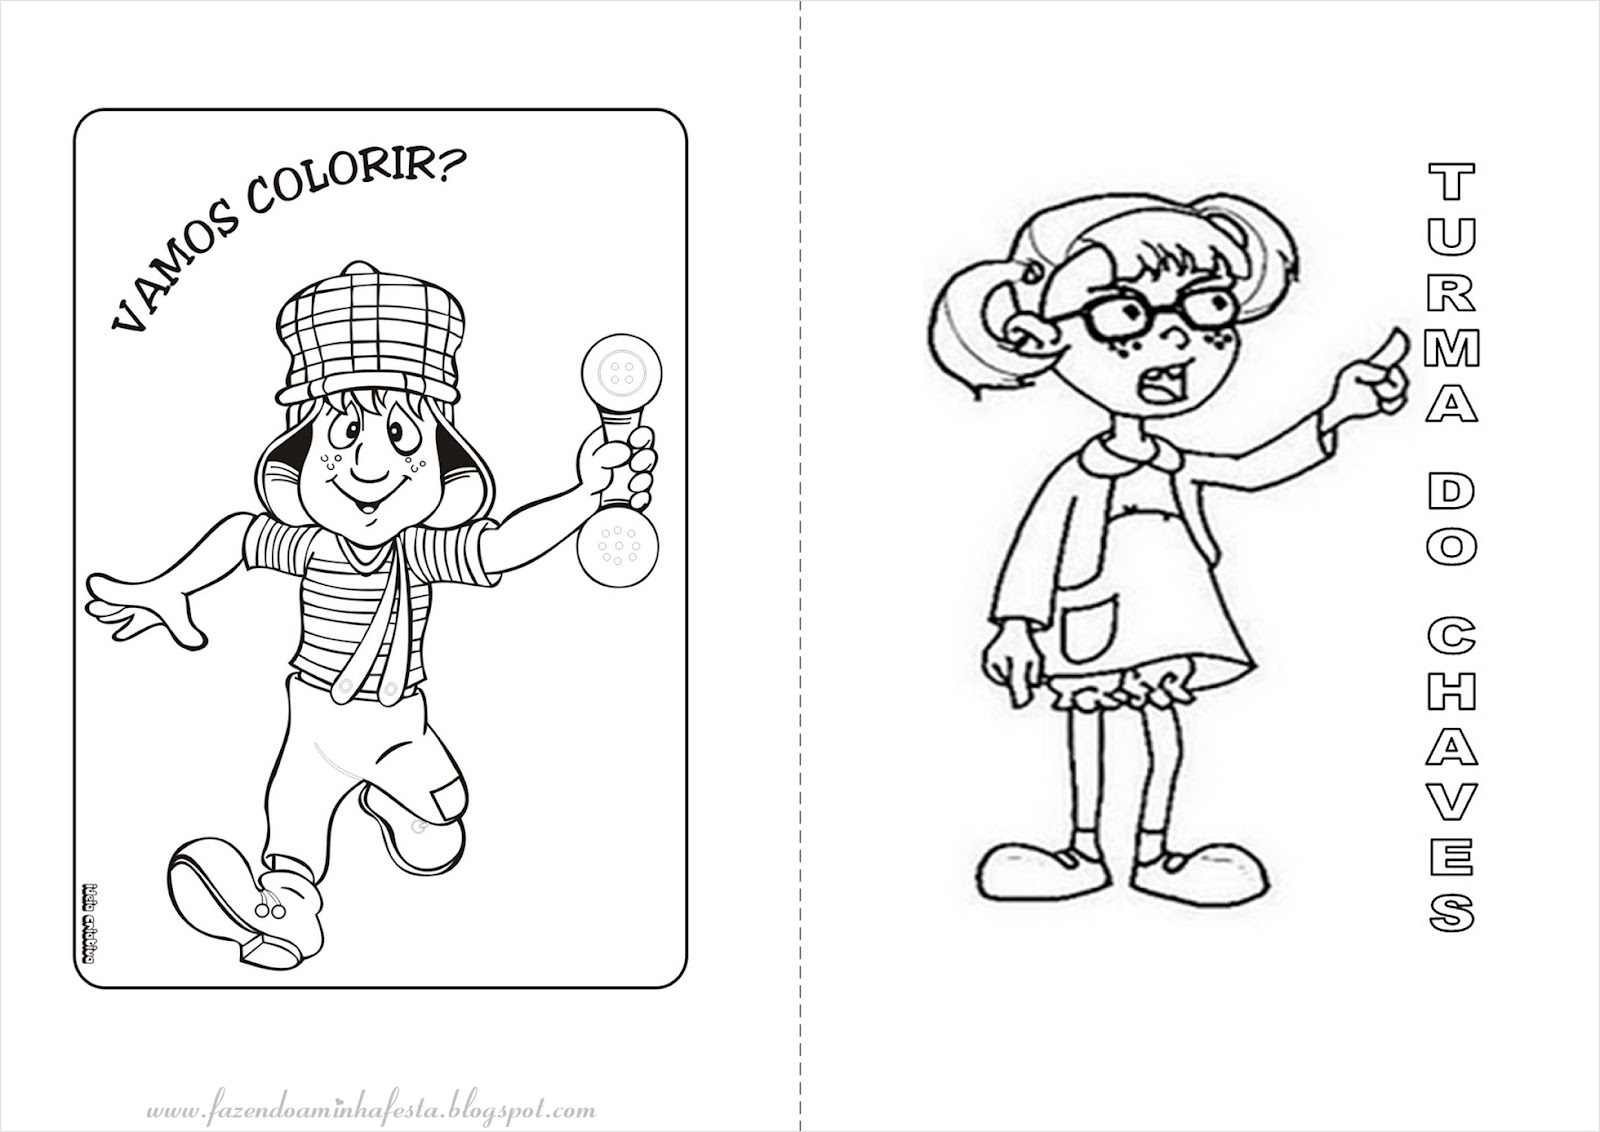 Fazendo a Nossa Festa - Colorir: Imagens para Colorir do Chaves e sua Turma!